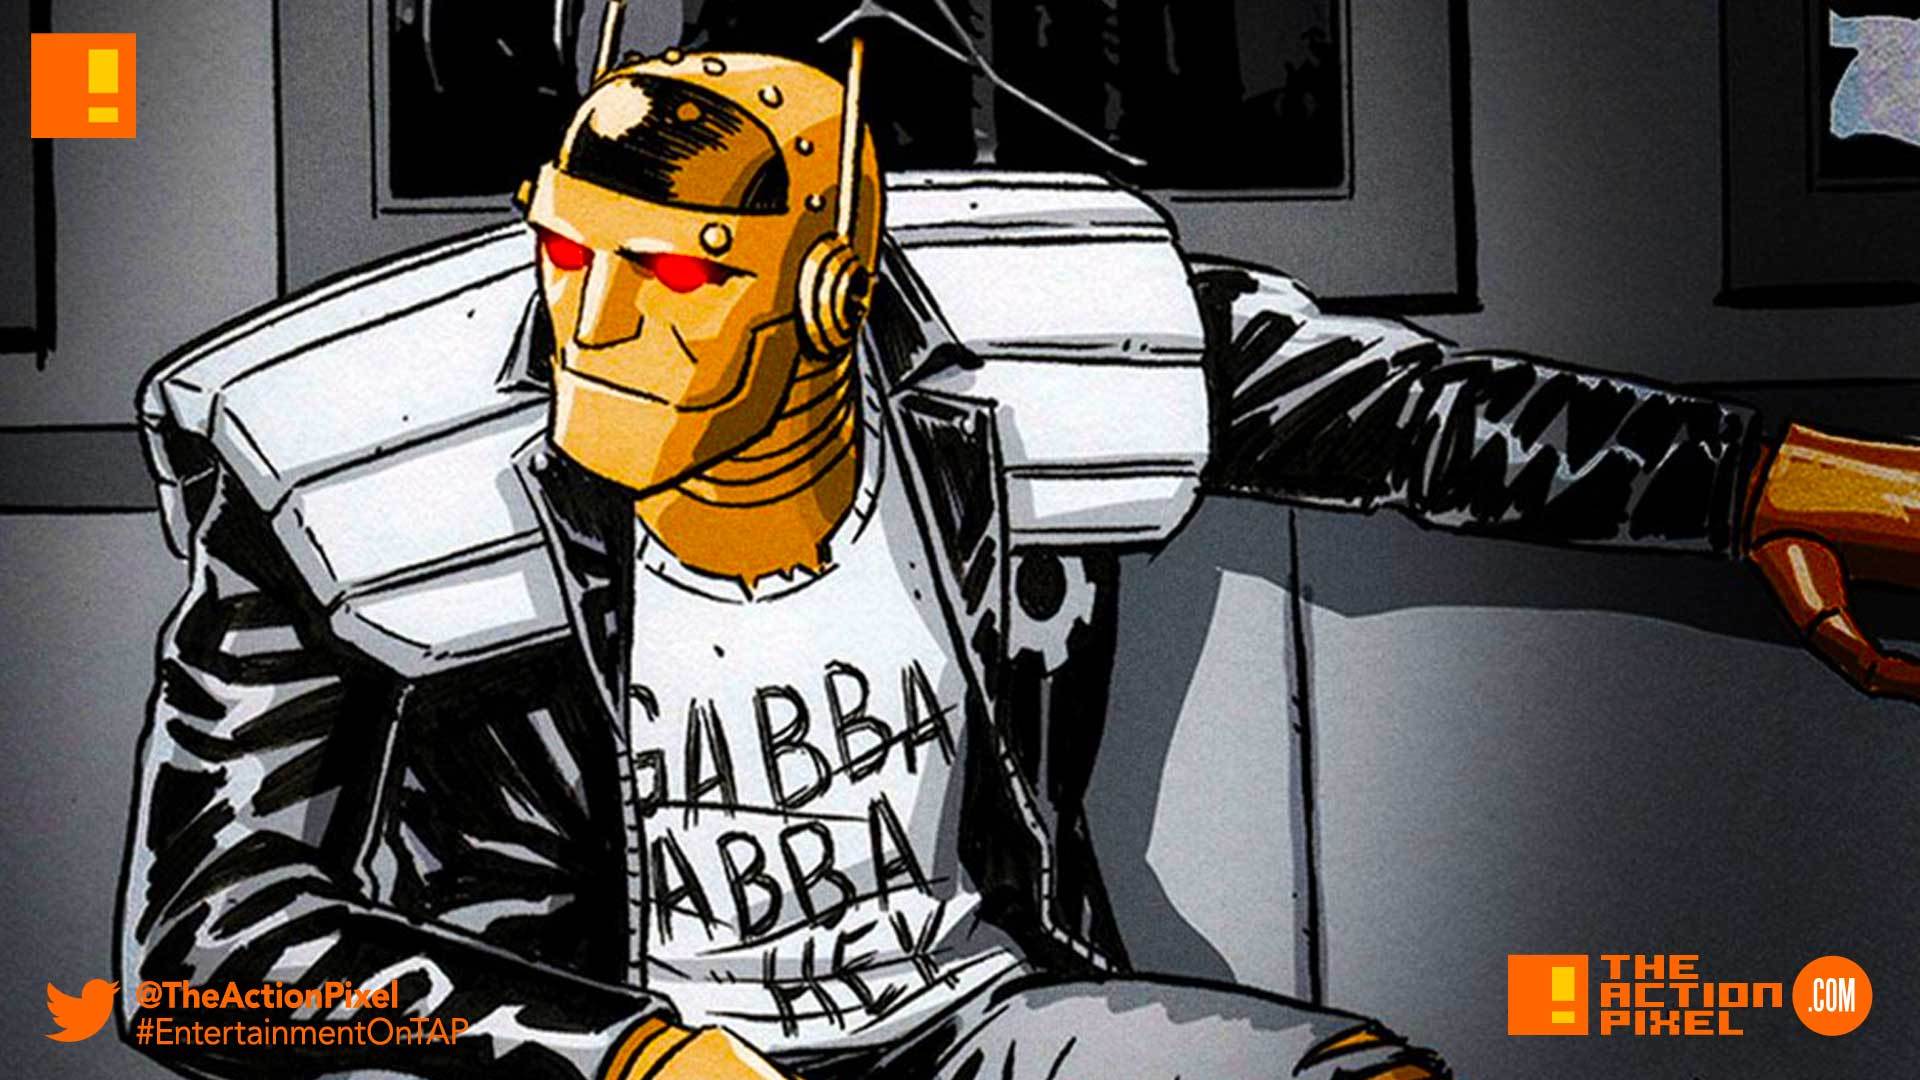 Doom Patrol” finds Robotman's voice in actor Brendan Fraser